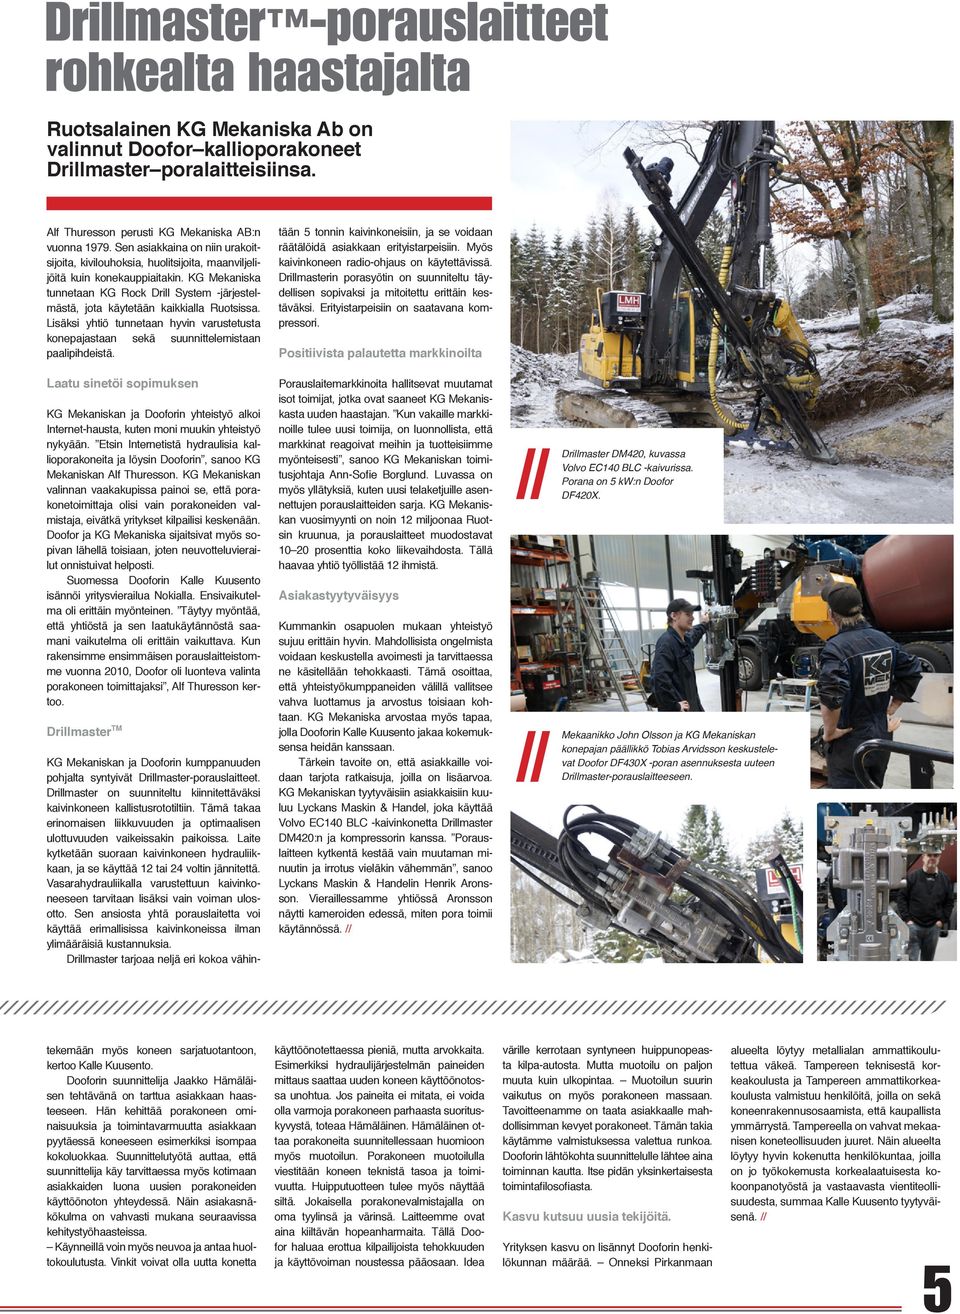 KG Mekaniska tunnetaan KG Rock Drill System -järjestelmästä, jota käytetään kaikkialla Ruotsissa. Lisäksi yhtiö tunnetaan hyvin varustetusta konepajastaan sekä suunnittelemistaan paalipihdeistä.